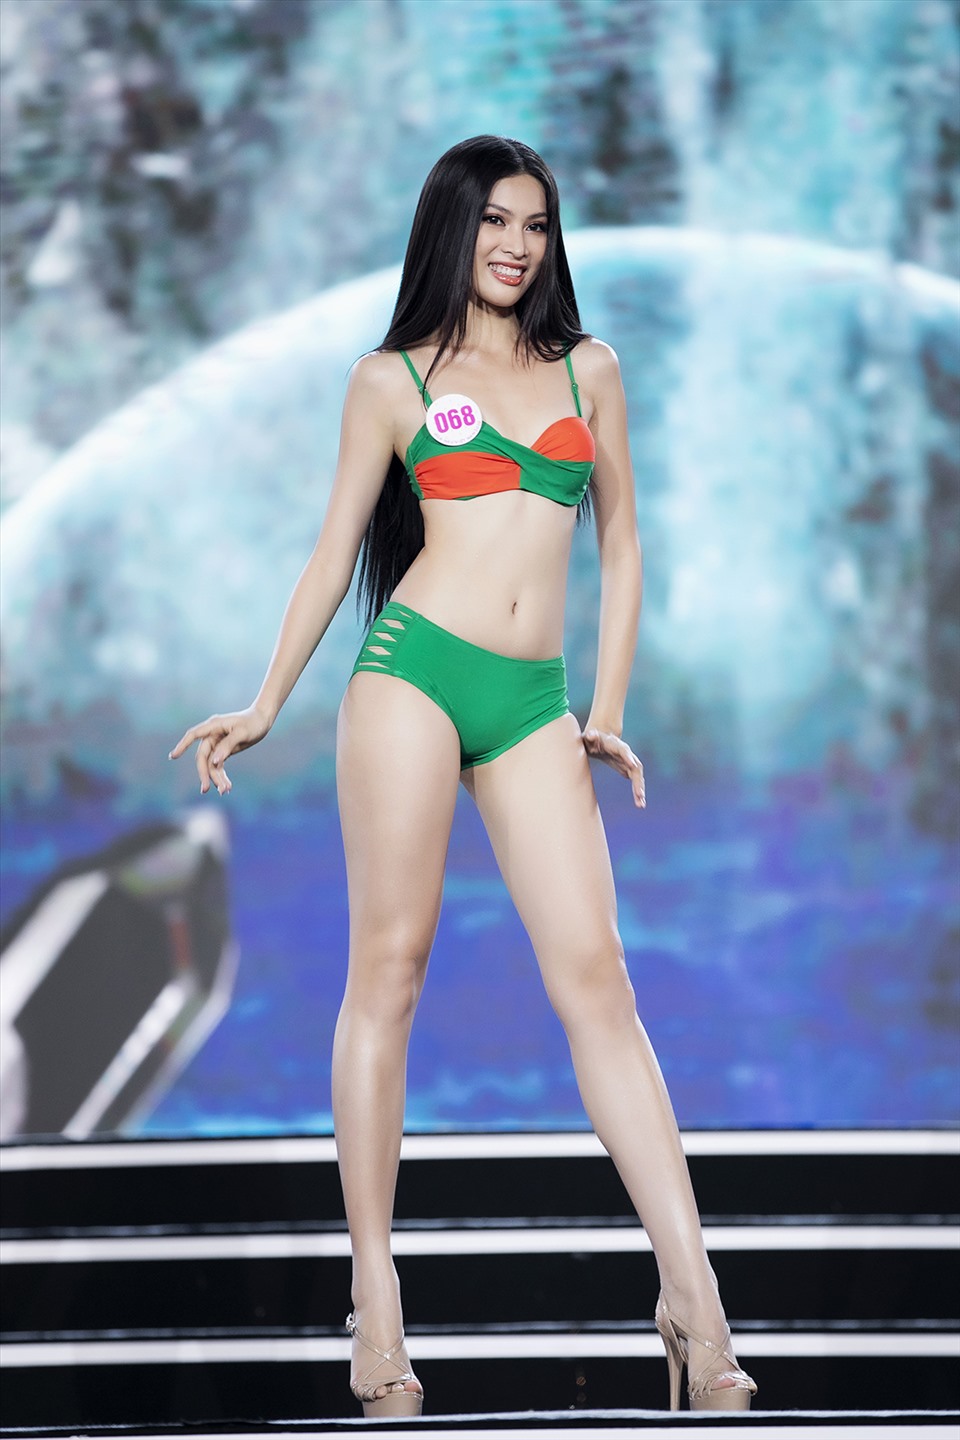 Trong đêm bán kết Hoa hậu Việt Nam, Ngọc Thảo nằm trong top thí sinh Hoa hậu Việt Nam 2020 nổi bật nhất cả về nhan sắc, hình thể và kĩ năng trình diễn. Cô được nhận xét là sở hữu gương mặt sáng với các đường nét sắc sảo. Ảnh: Kiếng Cận.